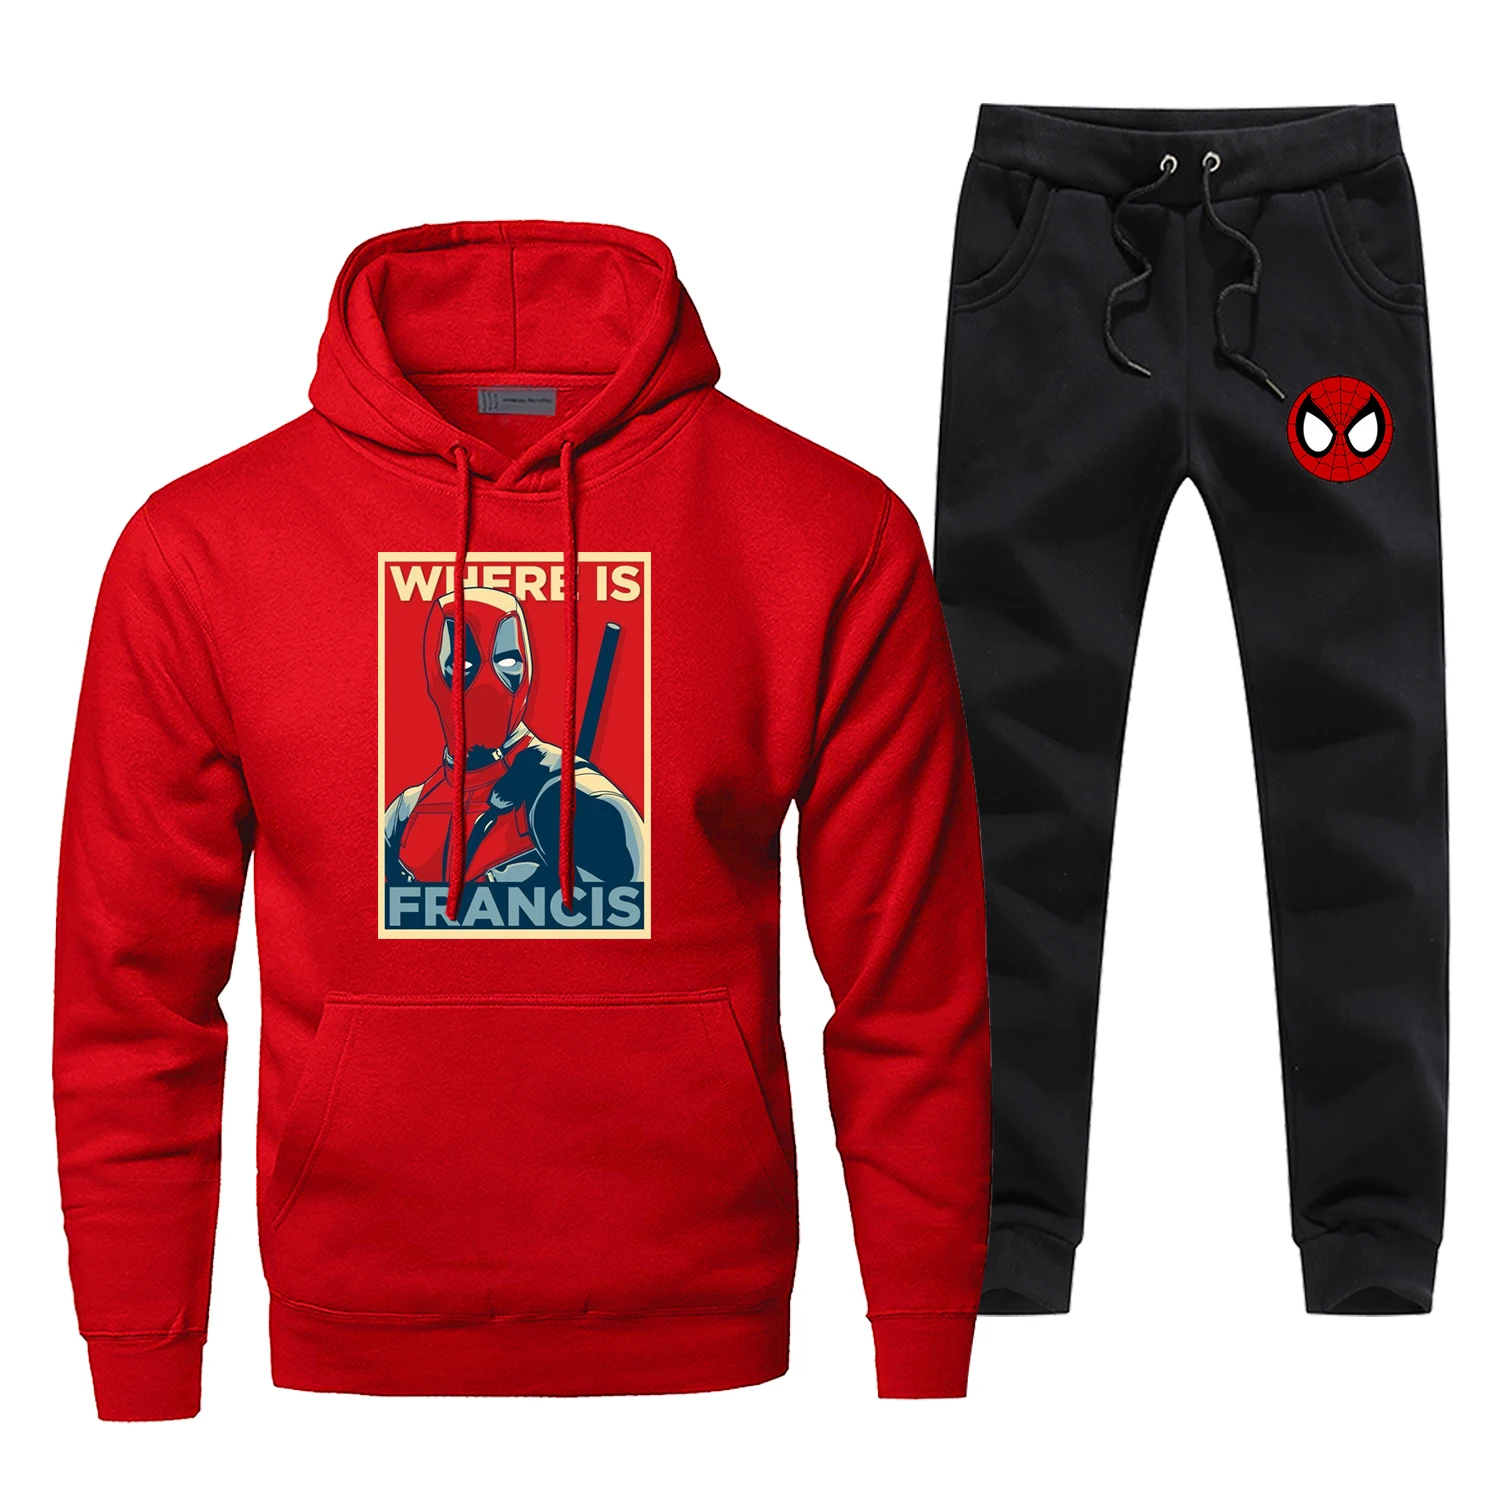 Новое поступление, мужской спортивный костюм Deadpool Where Is Francis, смешной принт, термо нижнее белье, зимний бодиутеплитель, спортивная одежда